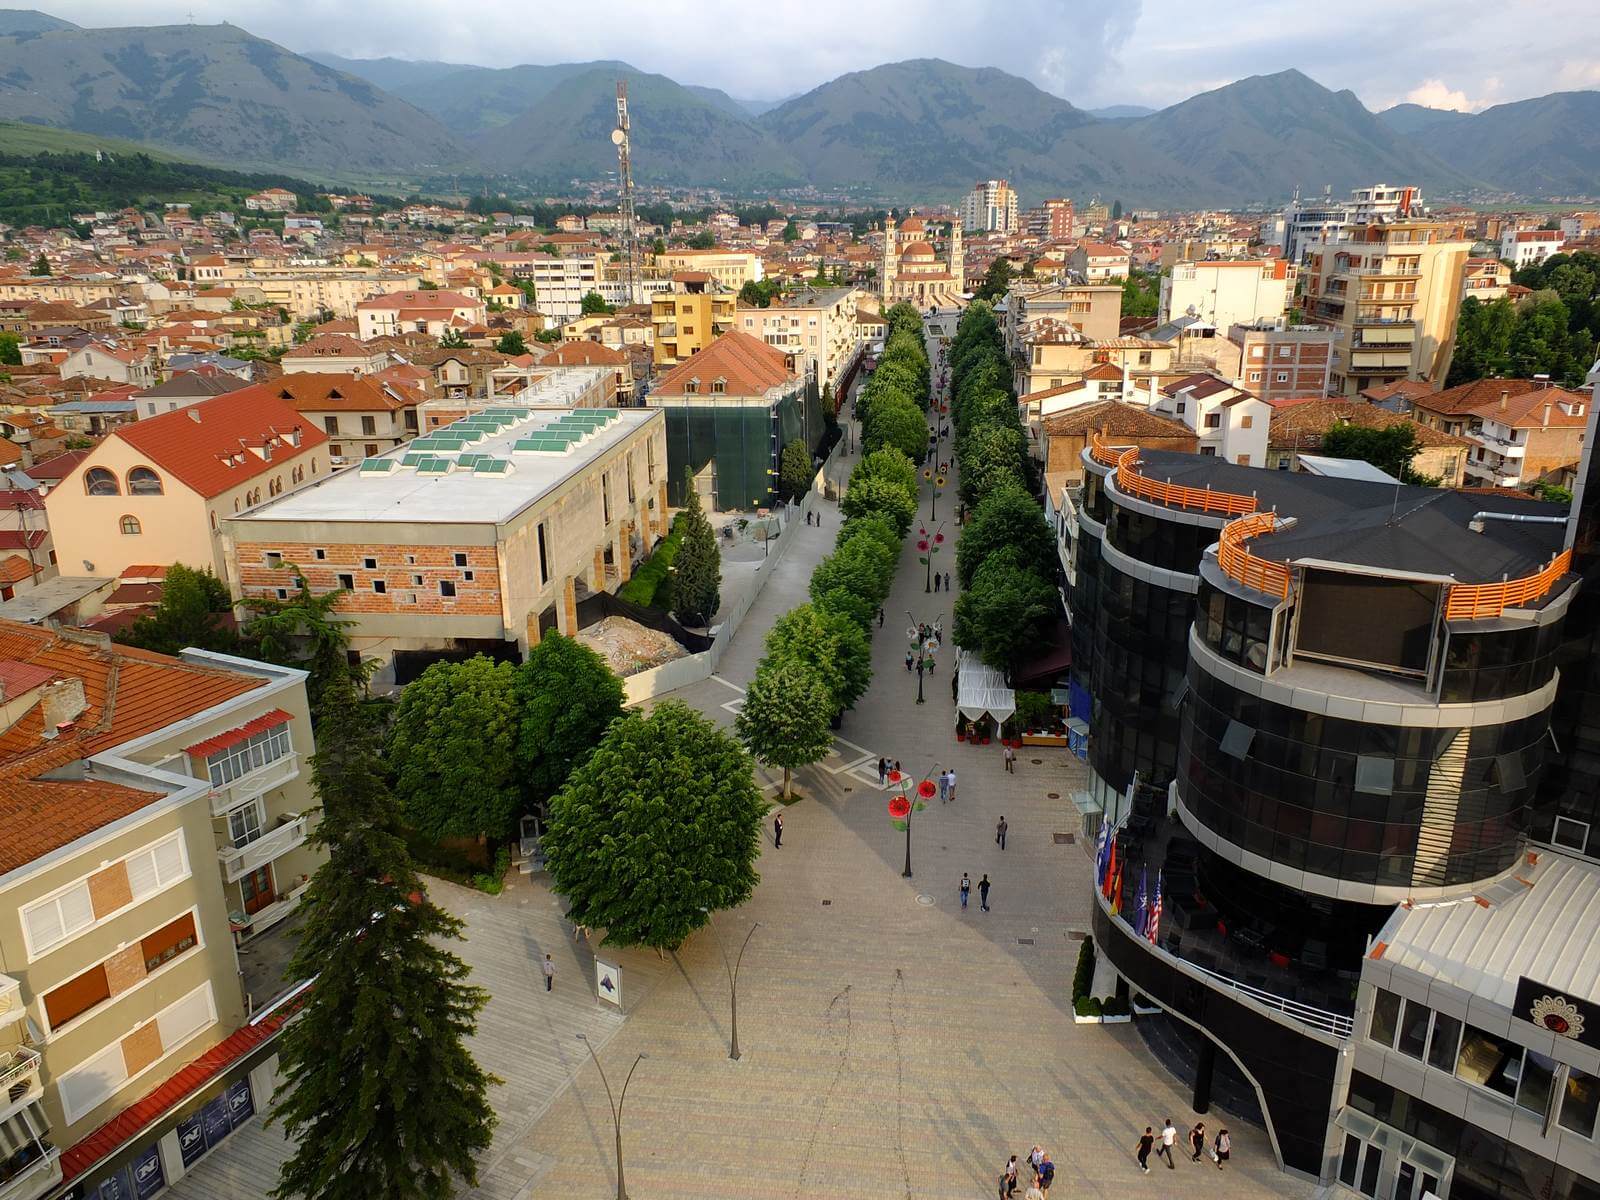 Foto: Die Hochland-Stadt Korca in Albanien mit ihrer Fugngerzone - Lupe Reisen